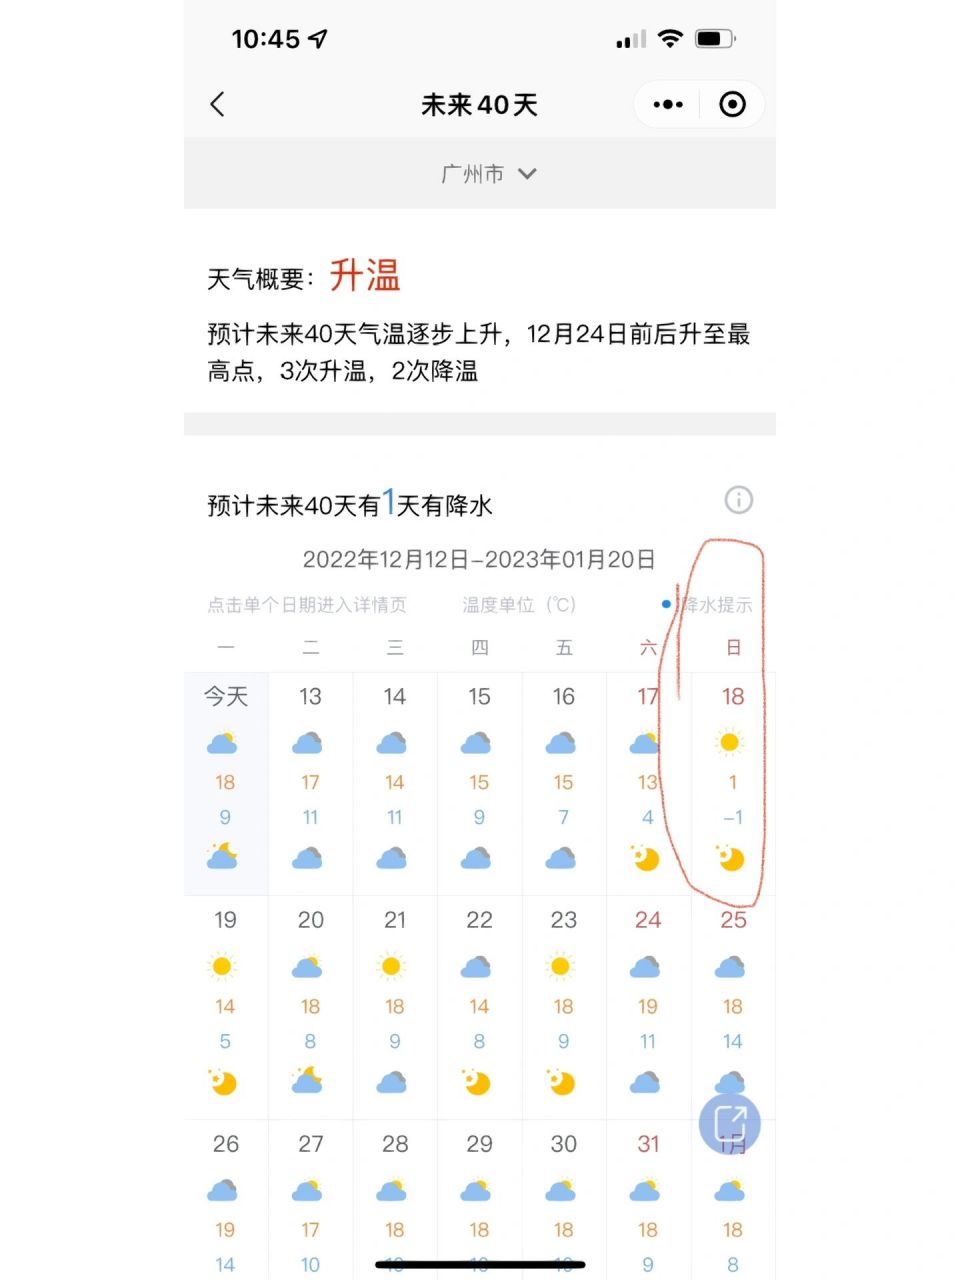 广州未来15天天气 广州这个温度,kill me!18号,1°,认真的吗?